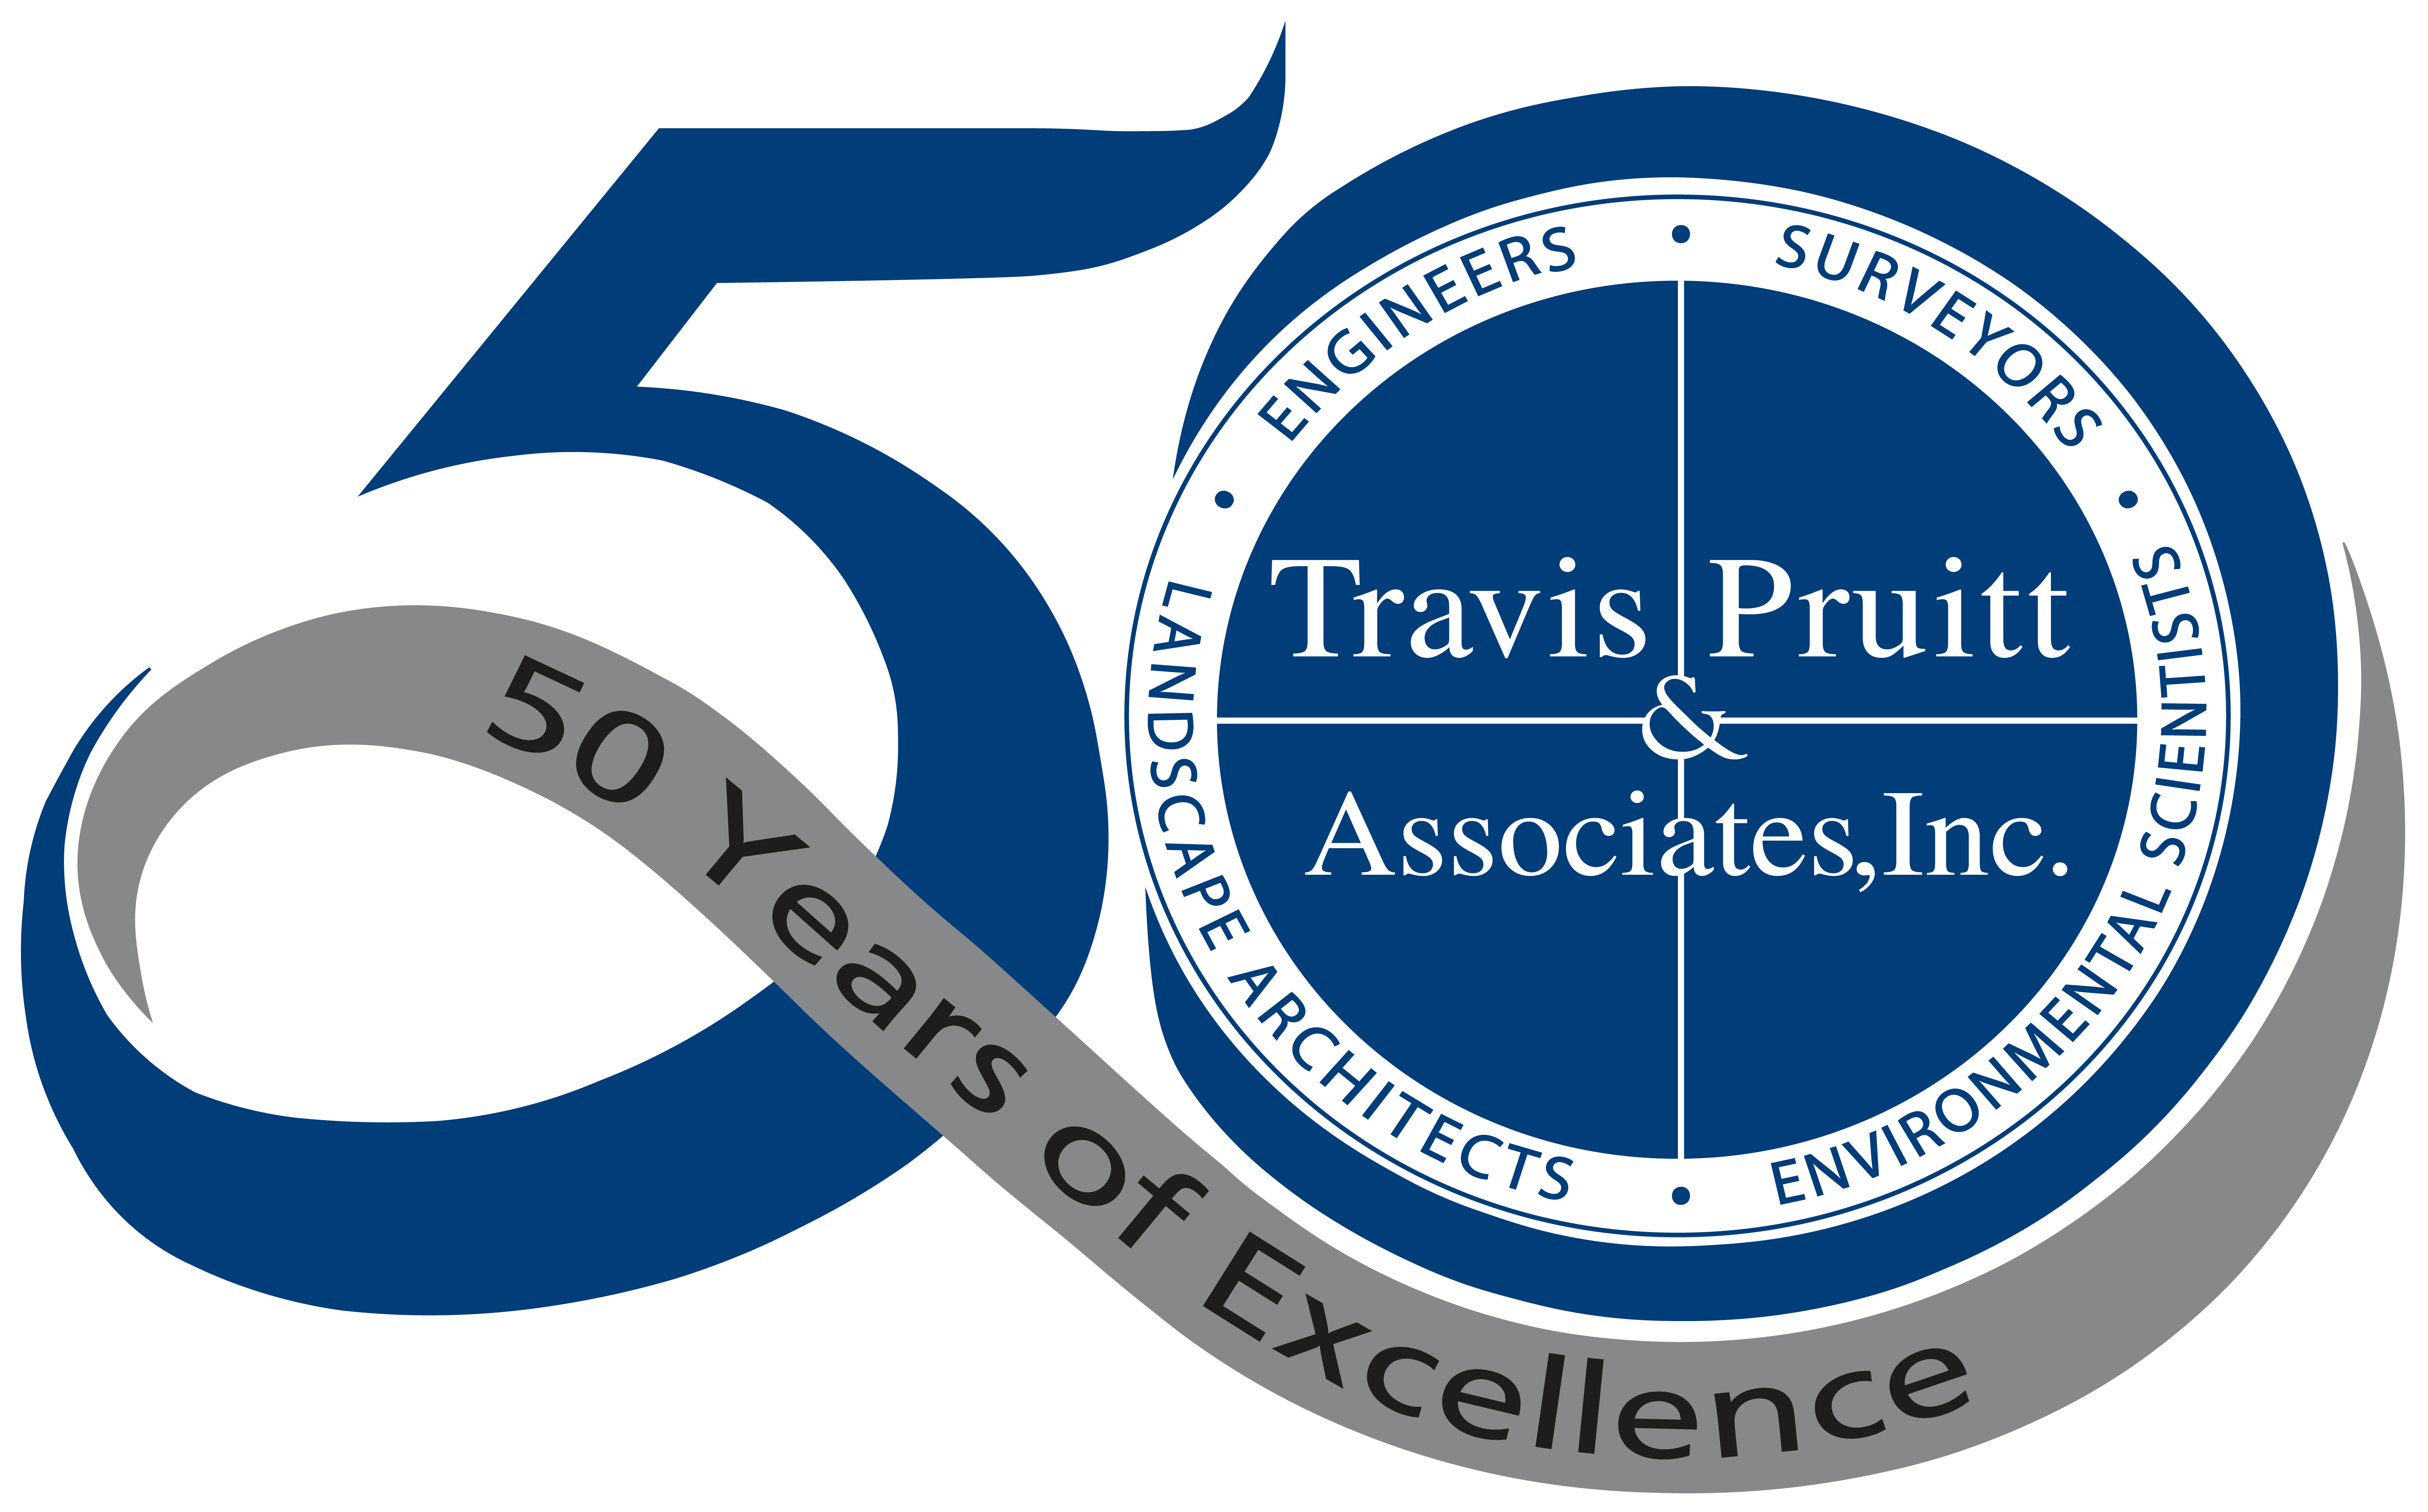 Travis Pruitt and Associates